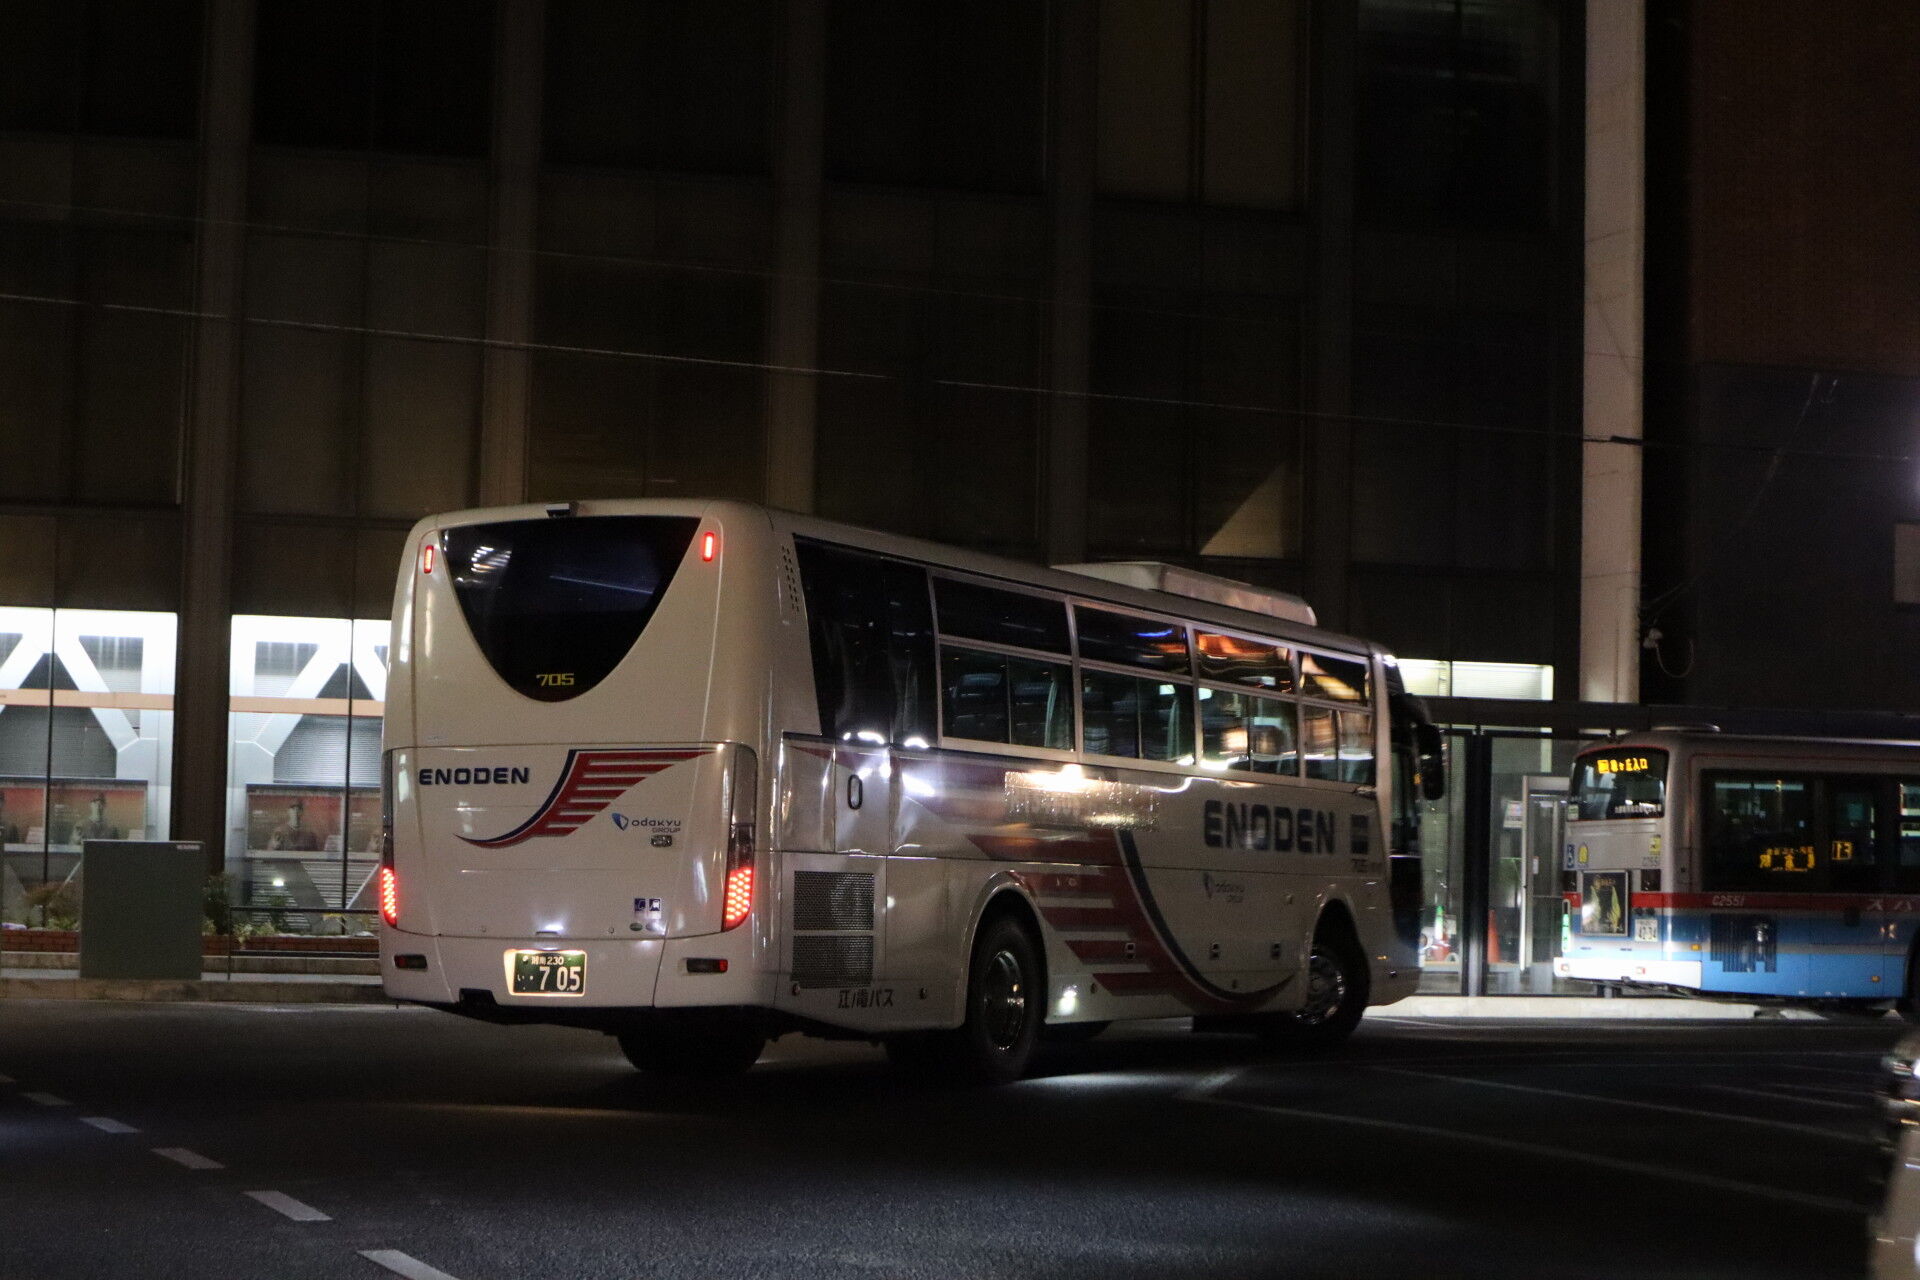 江ノ電バス R134bus実験運行レポート 江の島から鎌倉へ 休日自衛隊ライブドア基地 Jhsdf Livedoor Base